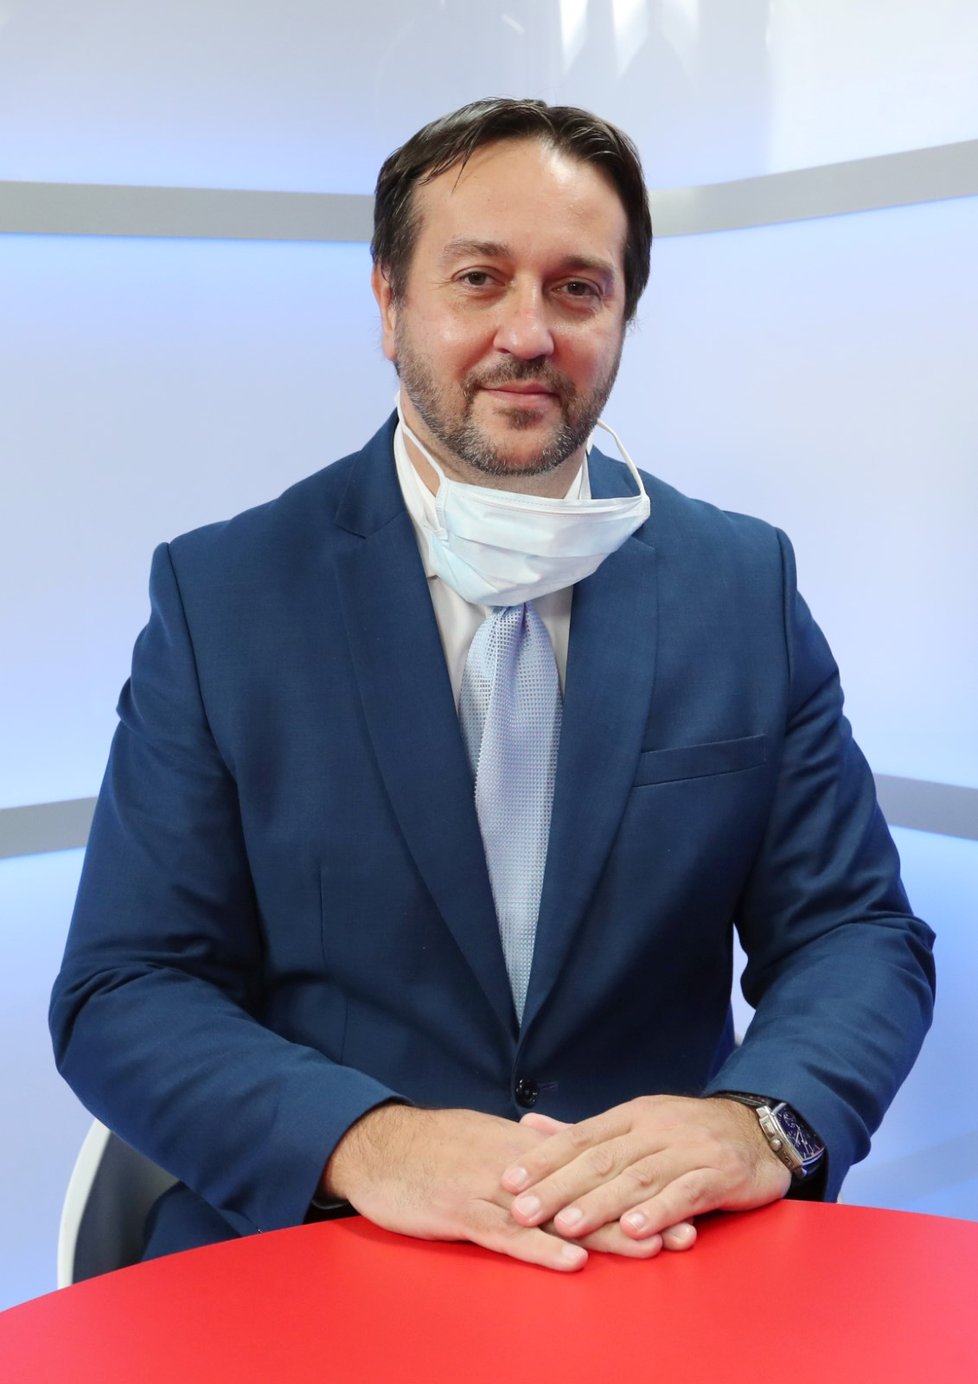 Epidemiolog Rastislav Maďar byl hostem pořadu Epicentrum vysílaného 16. 4. 2020.